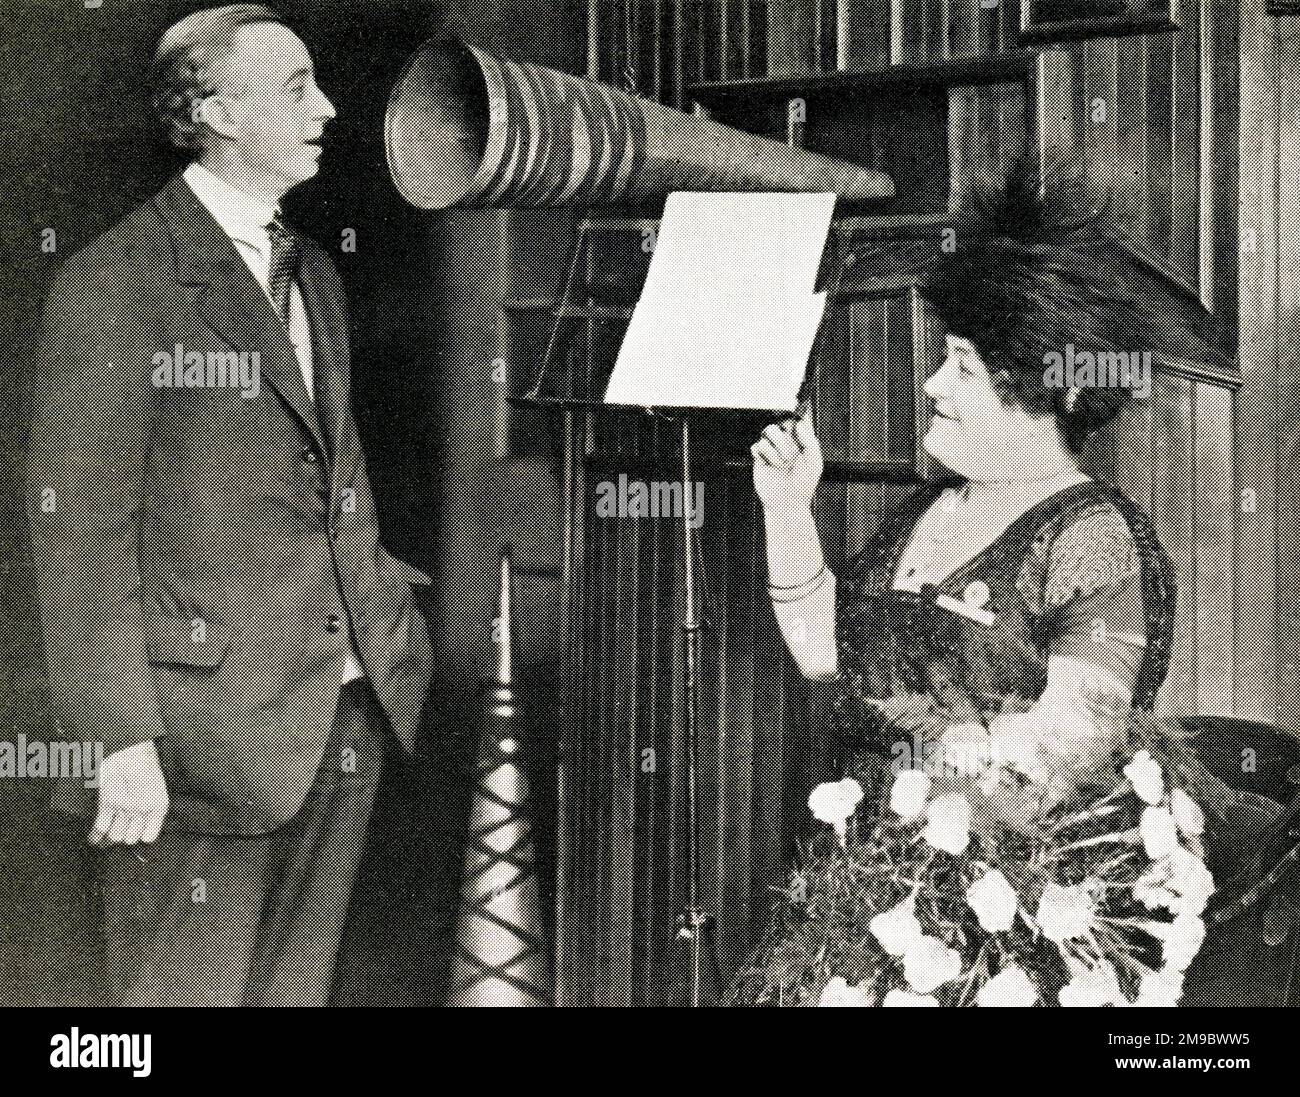 George Formby SNR nimmt seine Stimme auf, während die Opernsängerin Luisa Tetrazzini zusieht Stockfoto